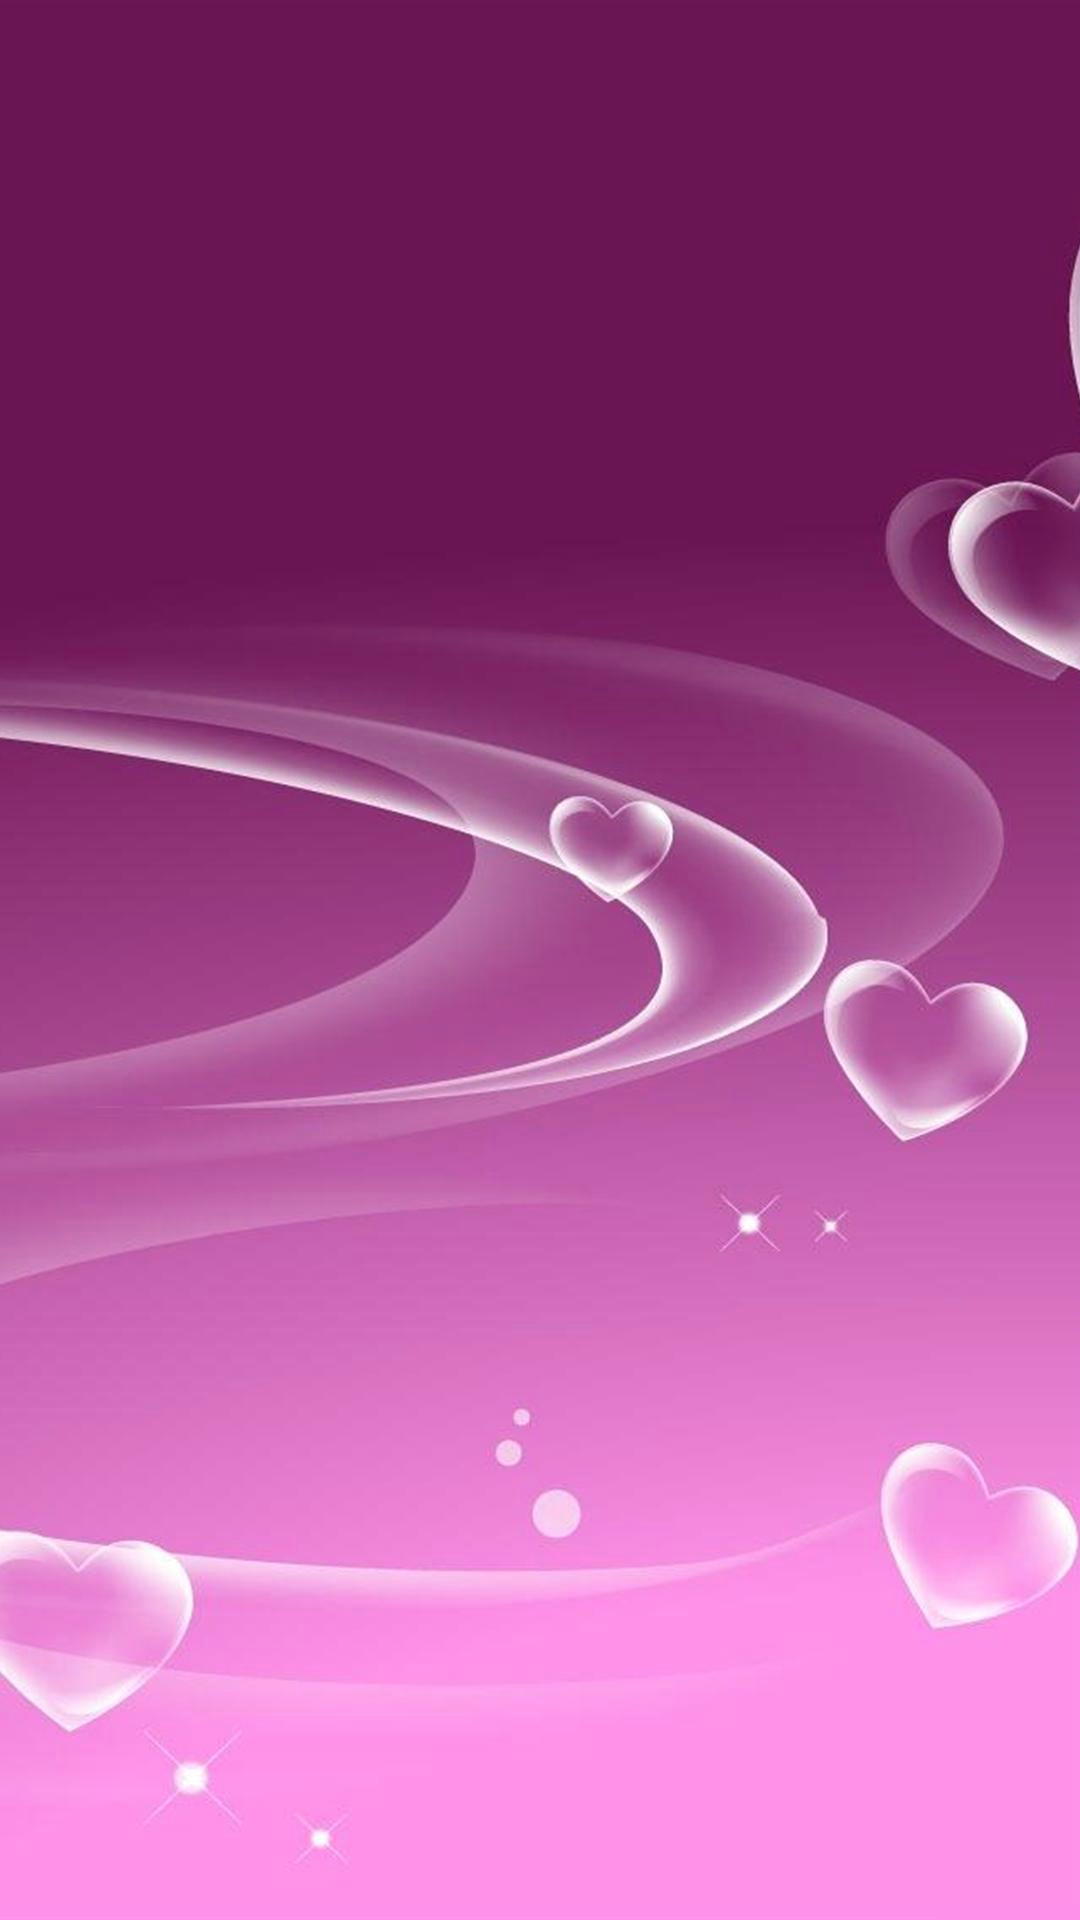 Cool Pink Love Heart Iphone Image - Fondos De Pantalla 14 De Febrero - HD Wallpaper 